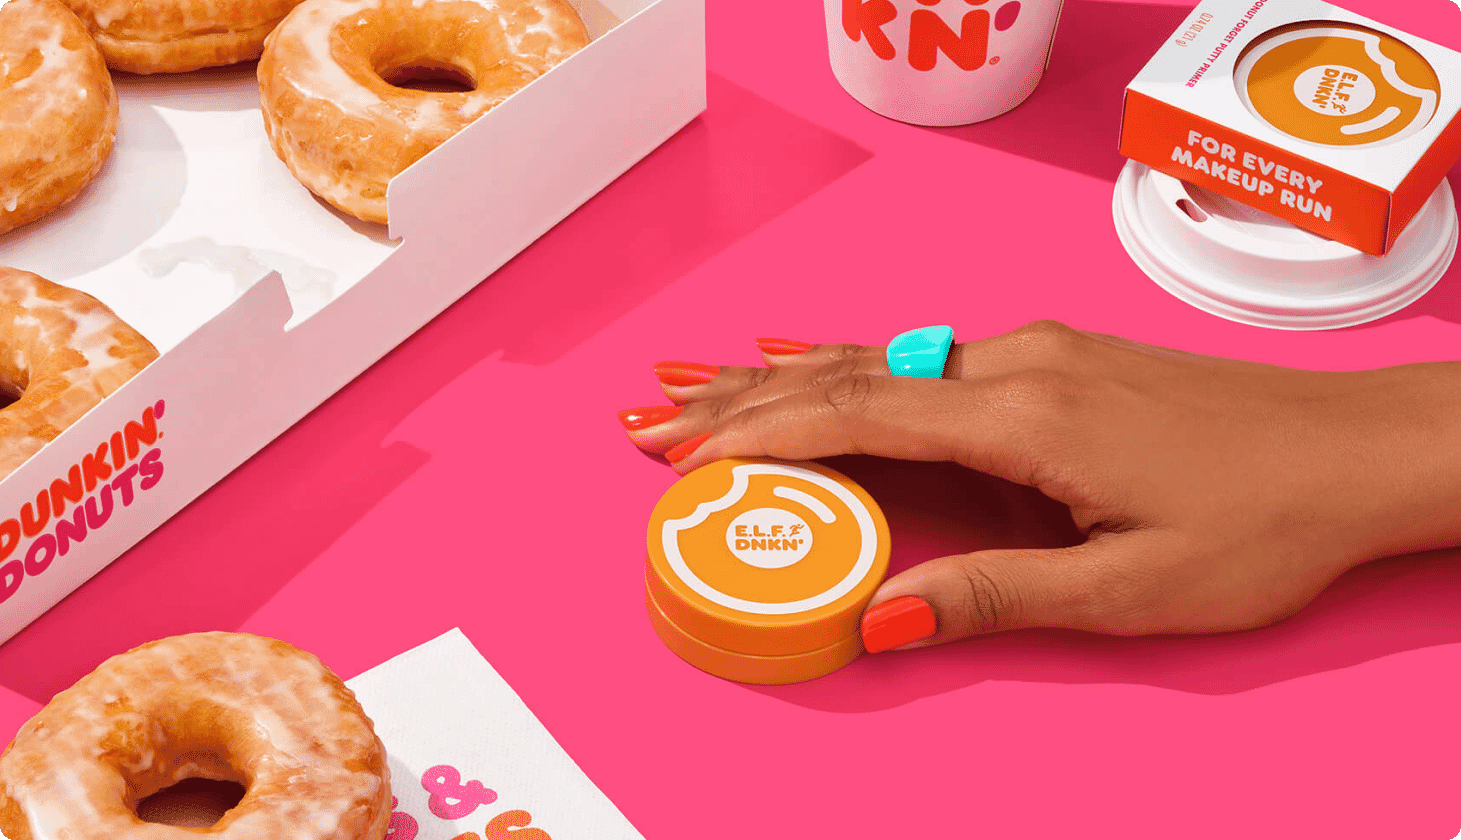 Dunkin Donuts + e.l.f. Cosmetics = Brand Perk Up